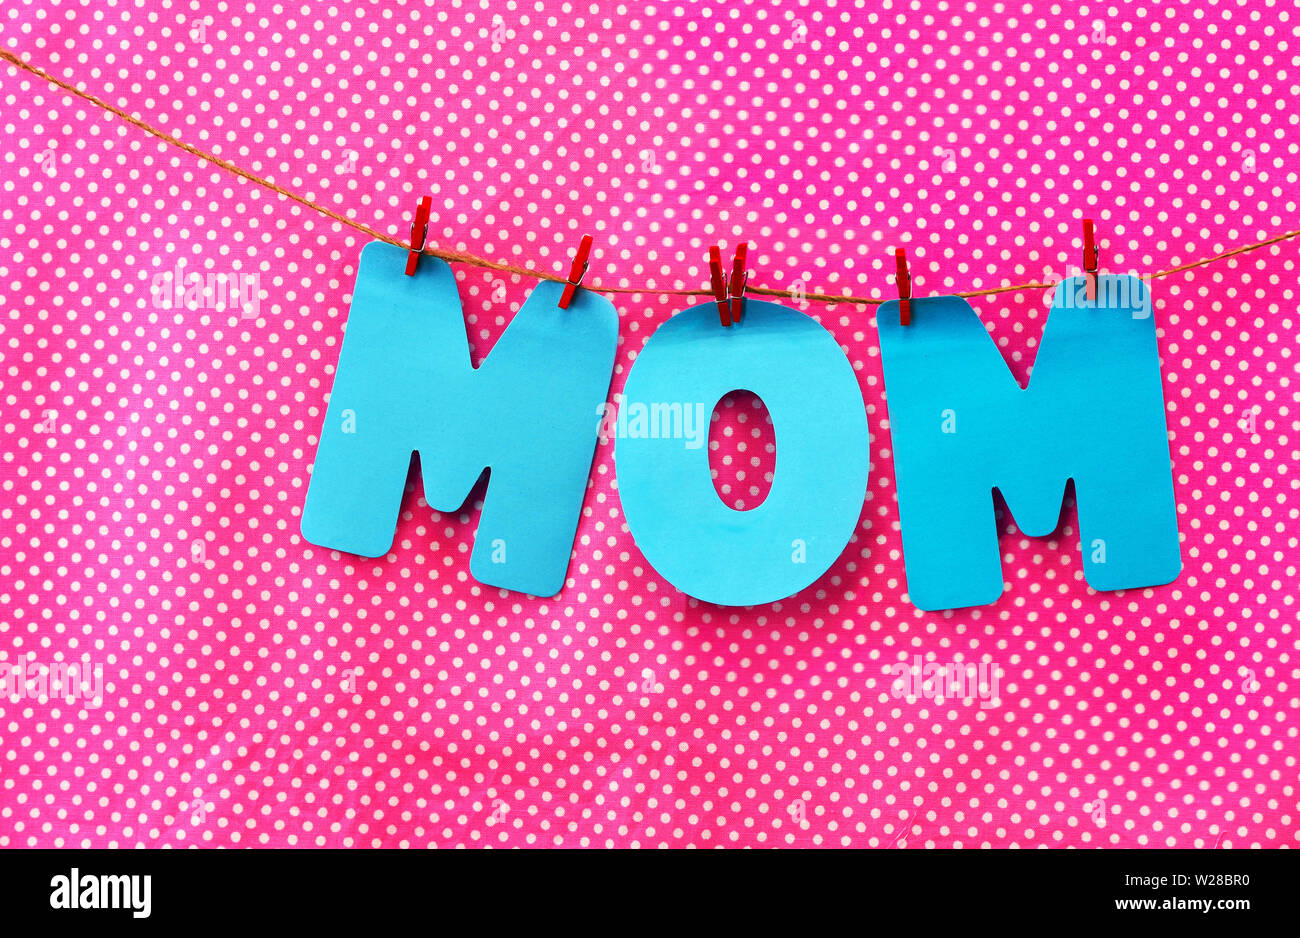 Blue cut-out lettere lettura MOM sono appese con vestiti di rosso i perni con una rosa polka dot sfondo di tessuto Foto Stock